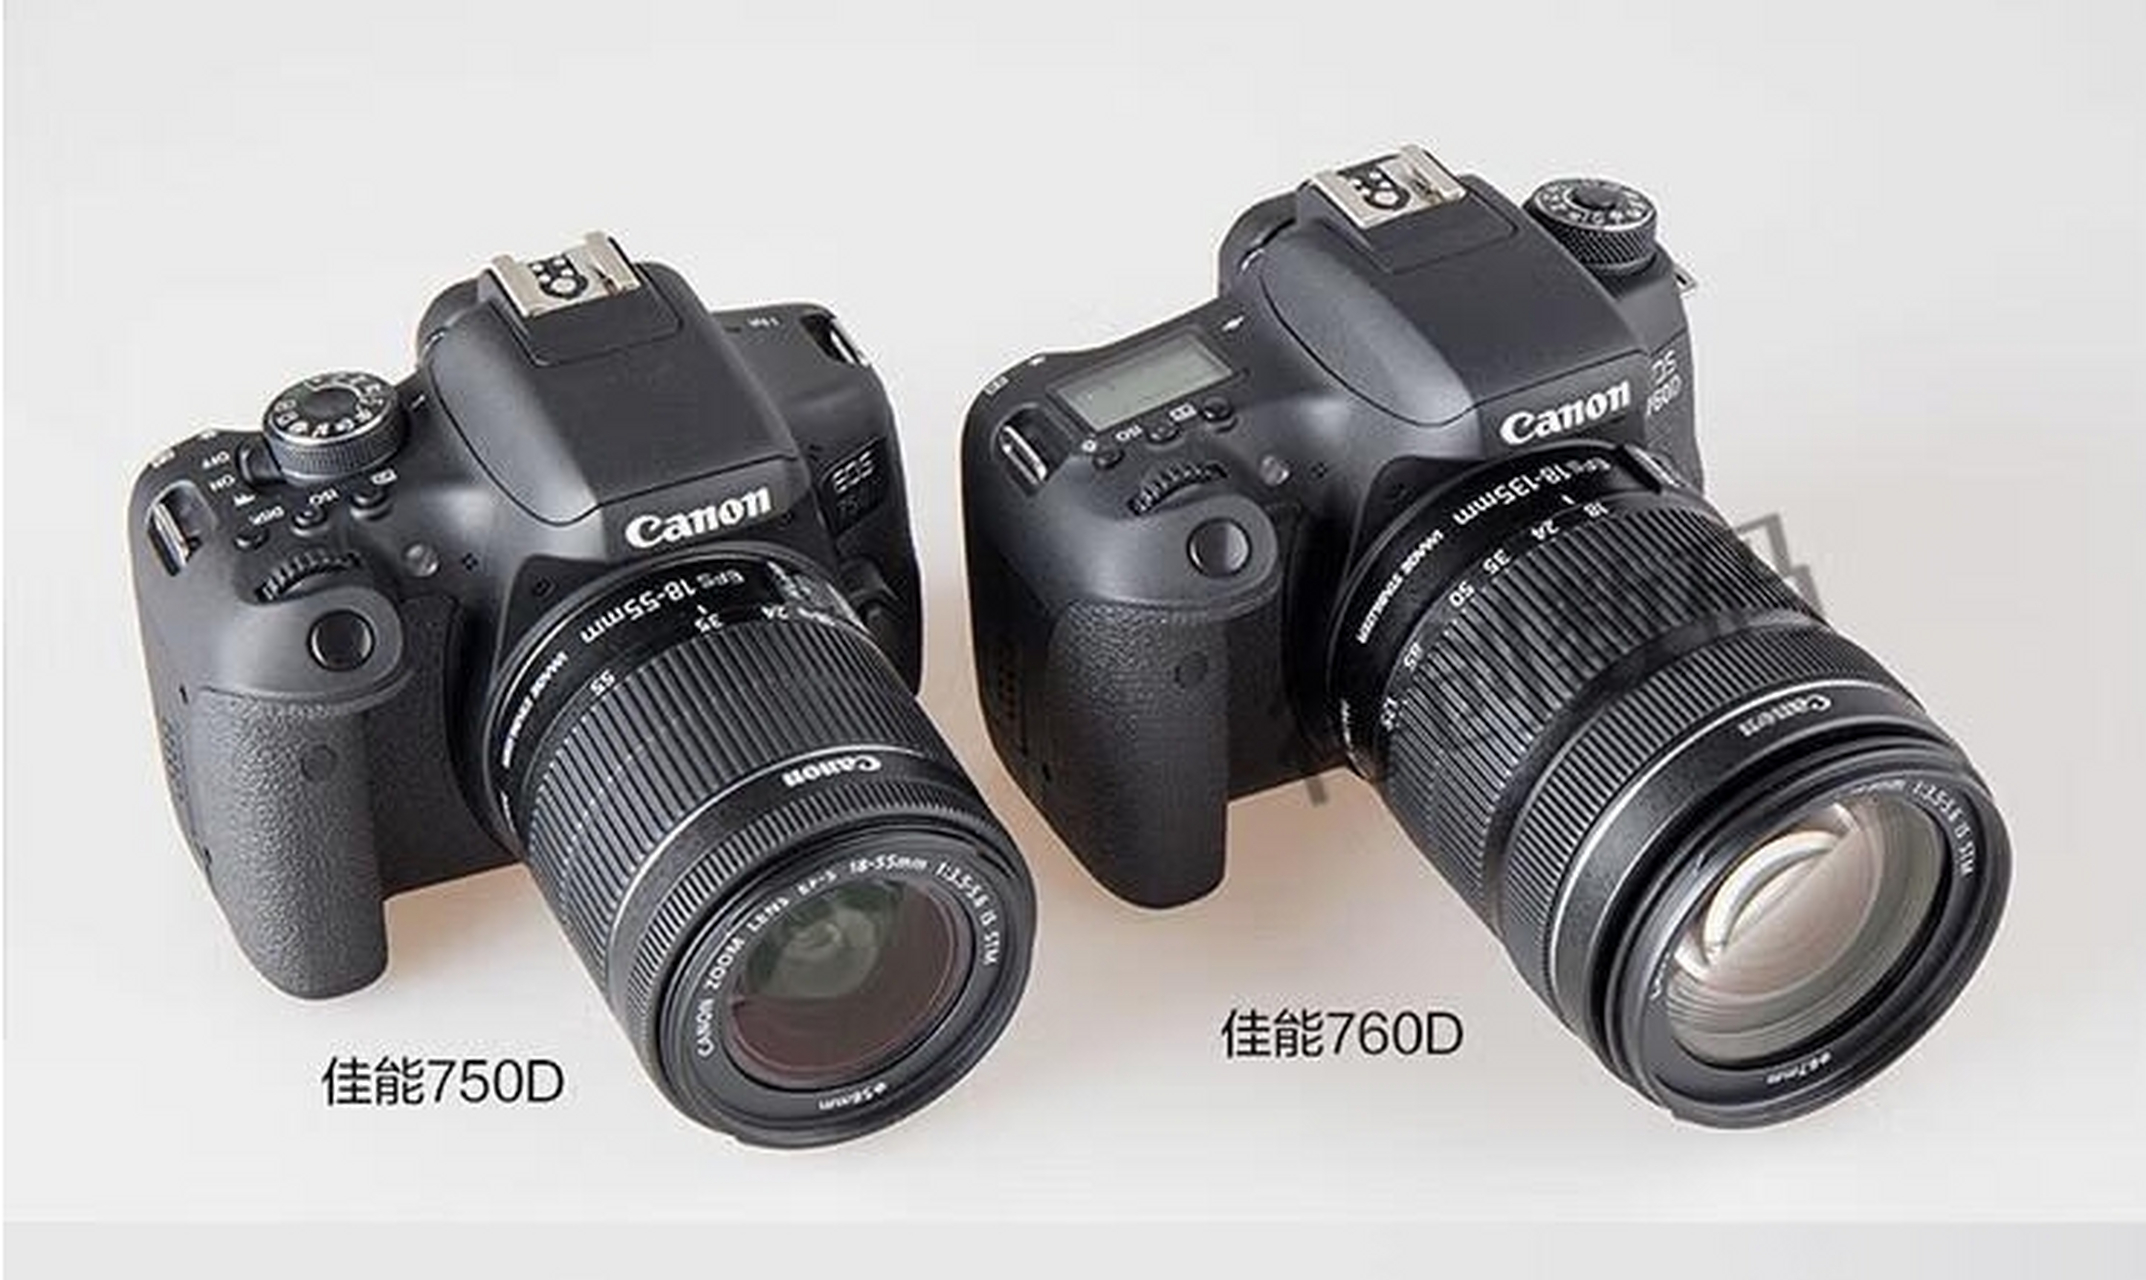 佳能eos 600d,700d,750d和760d系列相机作为入门级单反,深受学生和